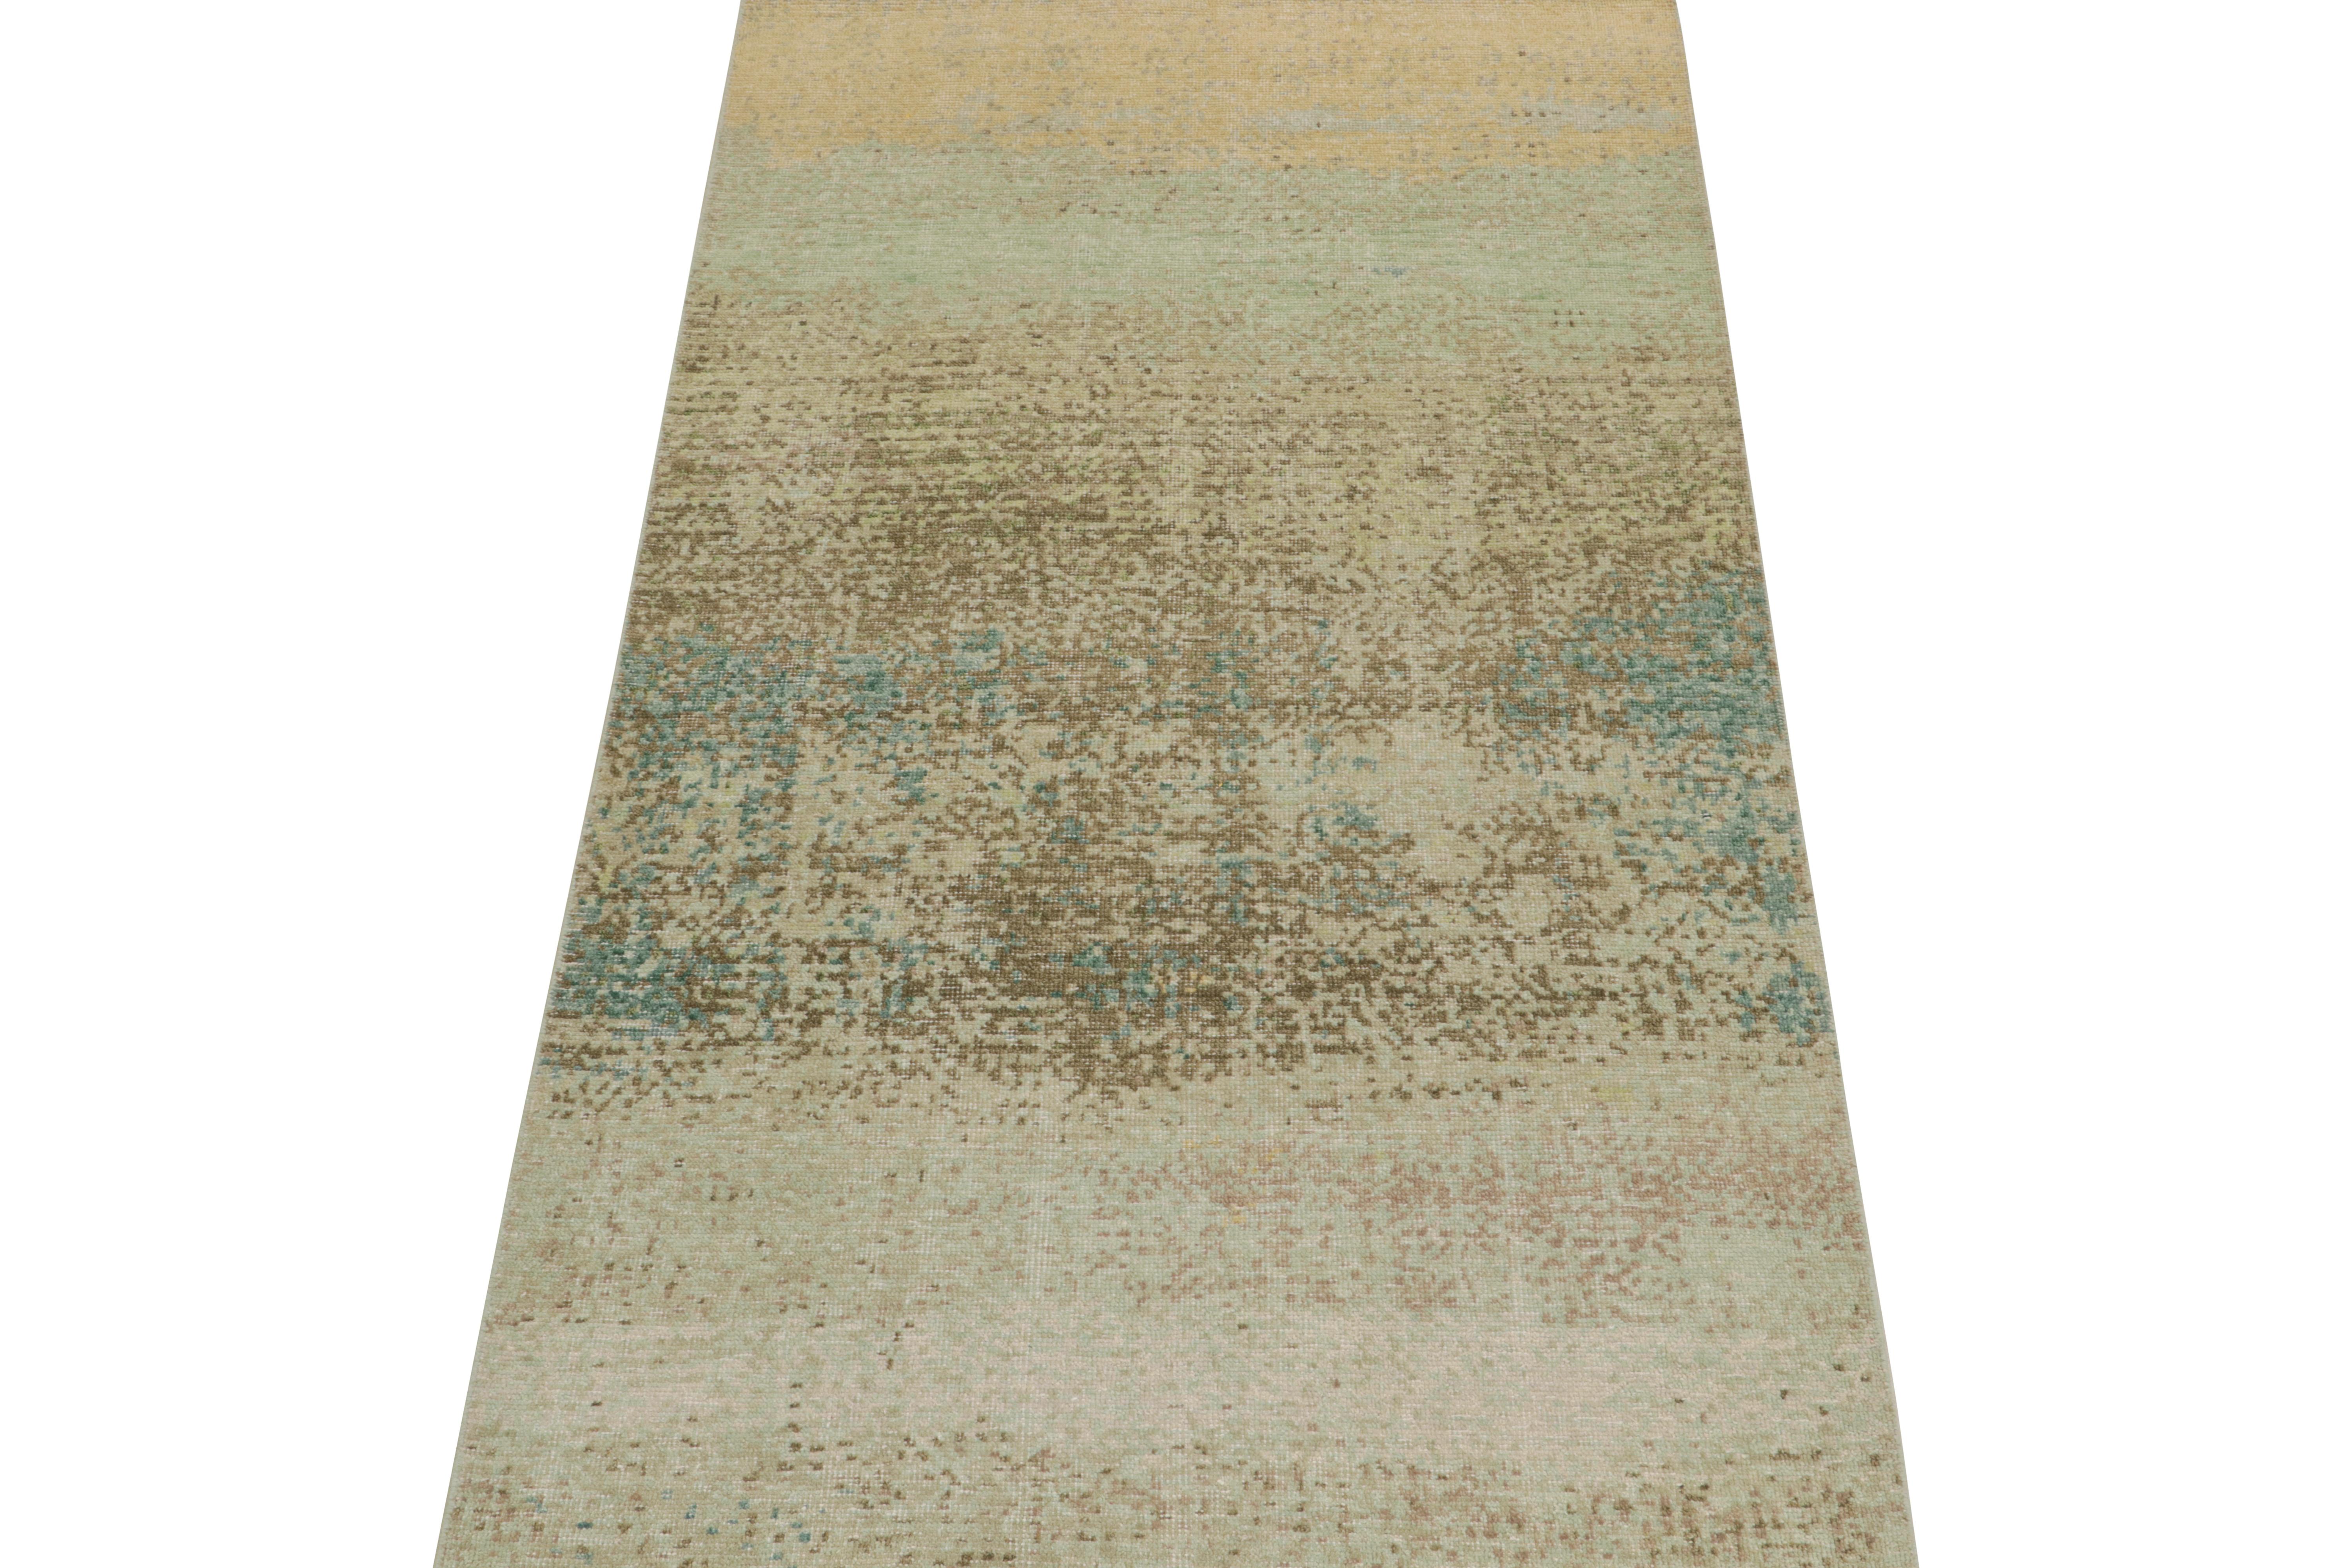 Ce tapis abstrait contemporain 4x8 est une nouvelle addition à la collection Homage de Rug & Kilim.

Plus loin dans le Design :

Nouée à la main en laine et en coton, cette création évoque un jeu fluide de motifs superposés bleus, verts, beiges et